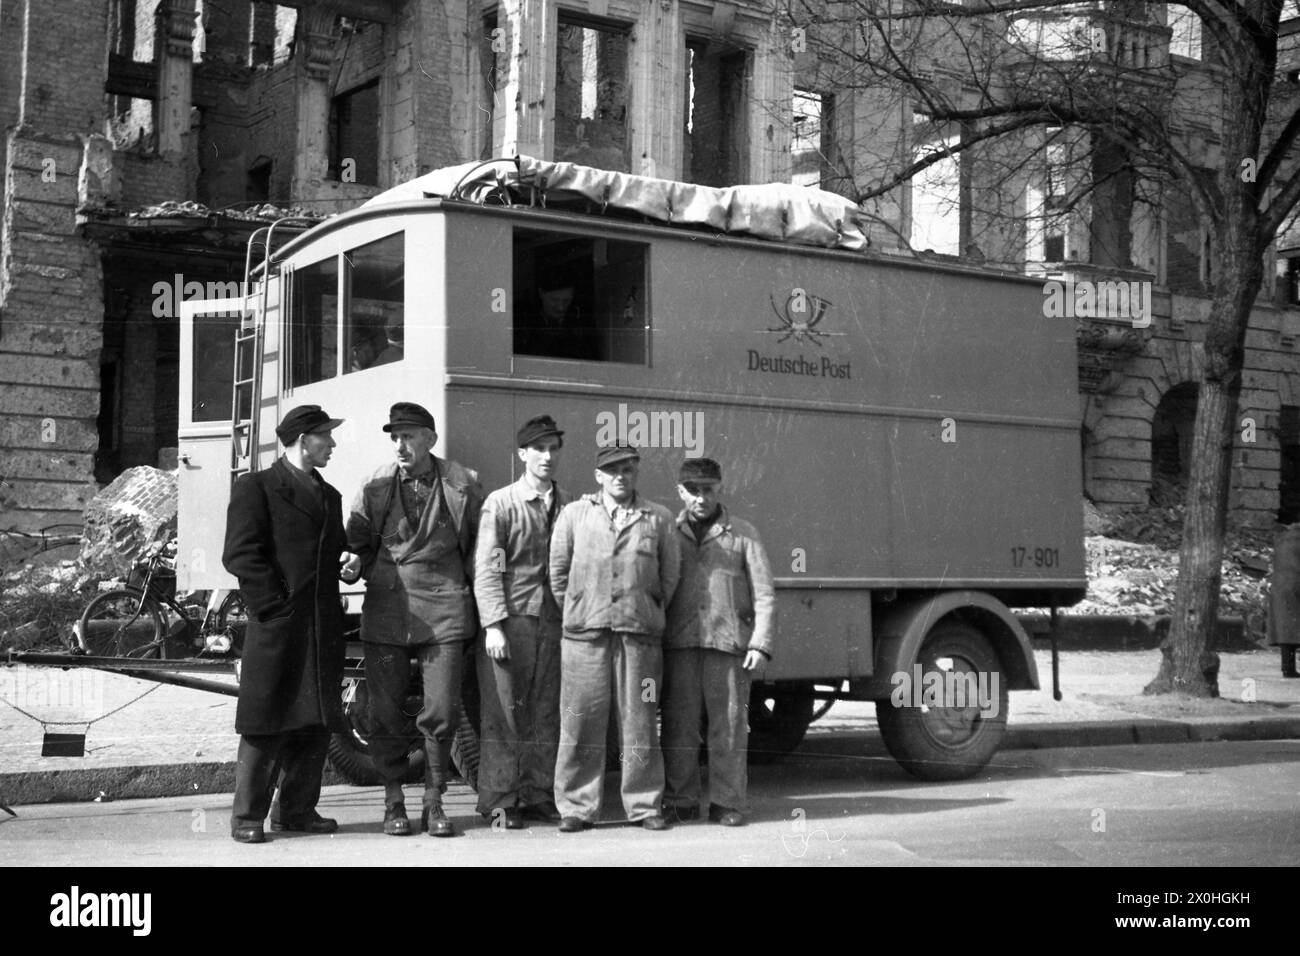 Les employés de Deutsche Post, en face d'une camionnette dans une rue détruite pendant la Seconde Guerre mondiale. Banque D'Images